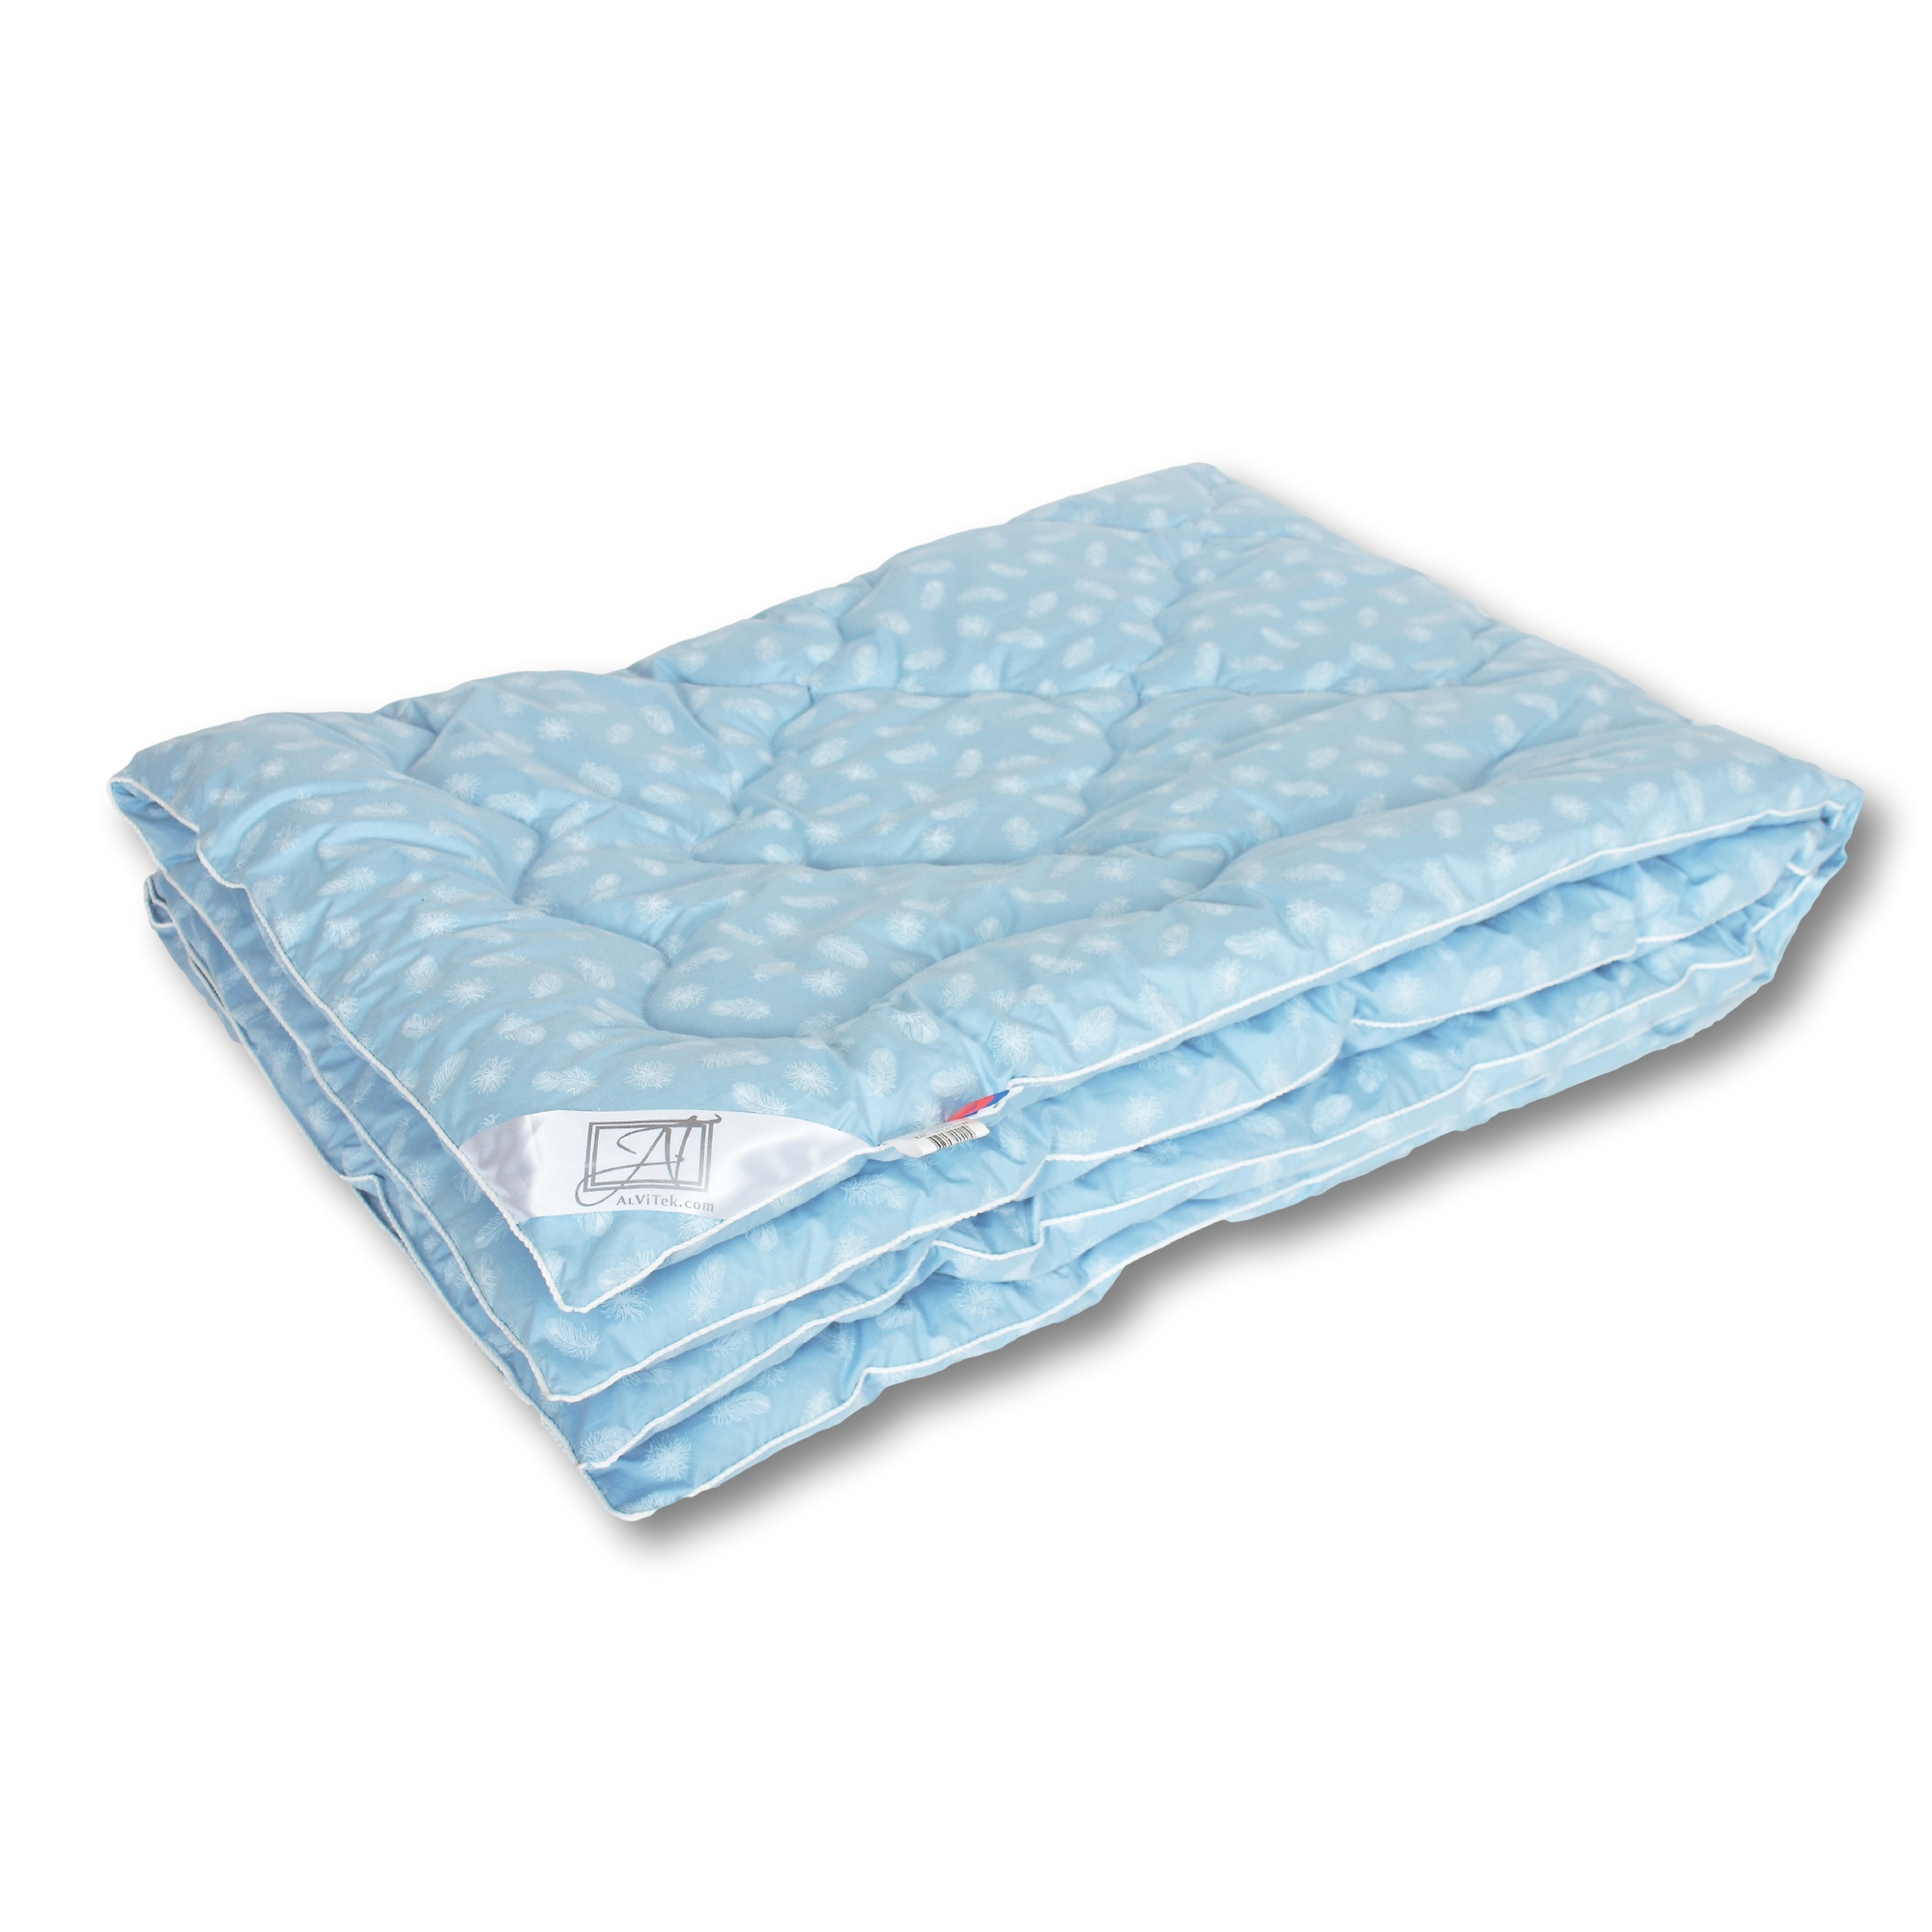 Одеяло Сhina Легкое (140x205 см), размер: 140х205 см, цвет: голубой iff35246 Одеяло Сhina Легкое (140x205 см) - фото 1